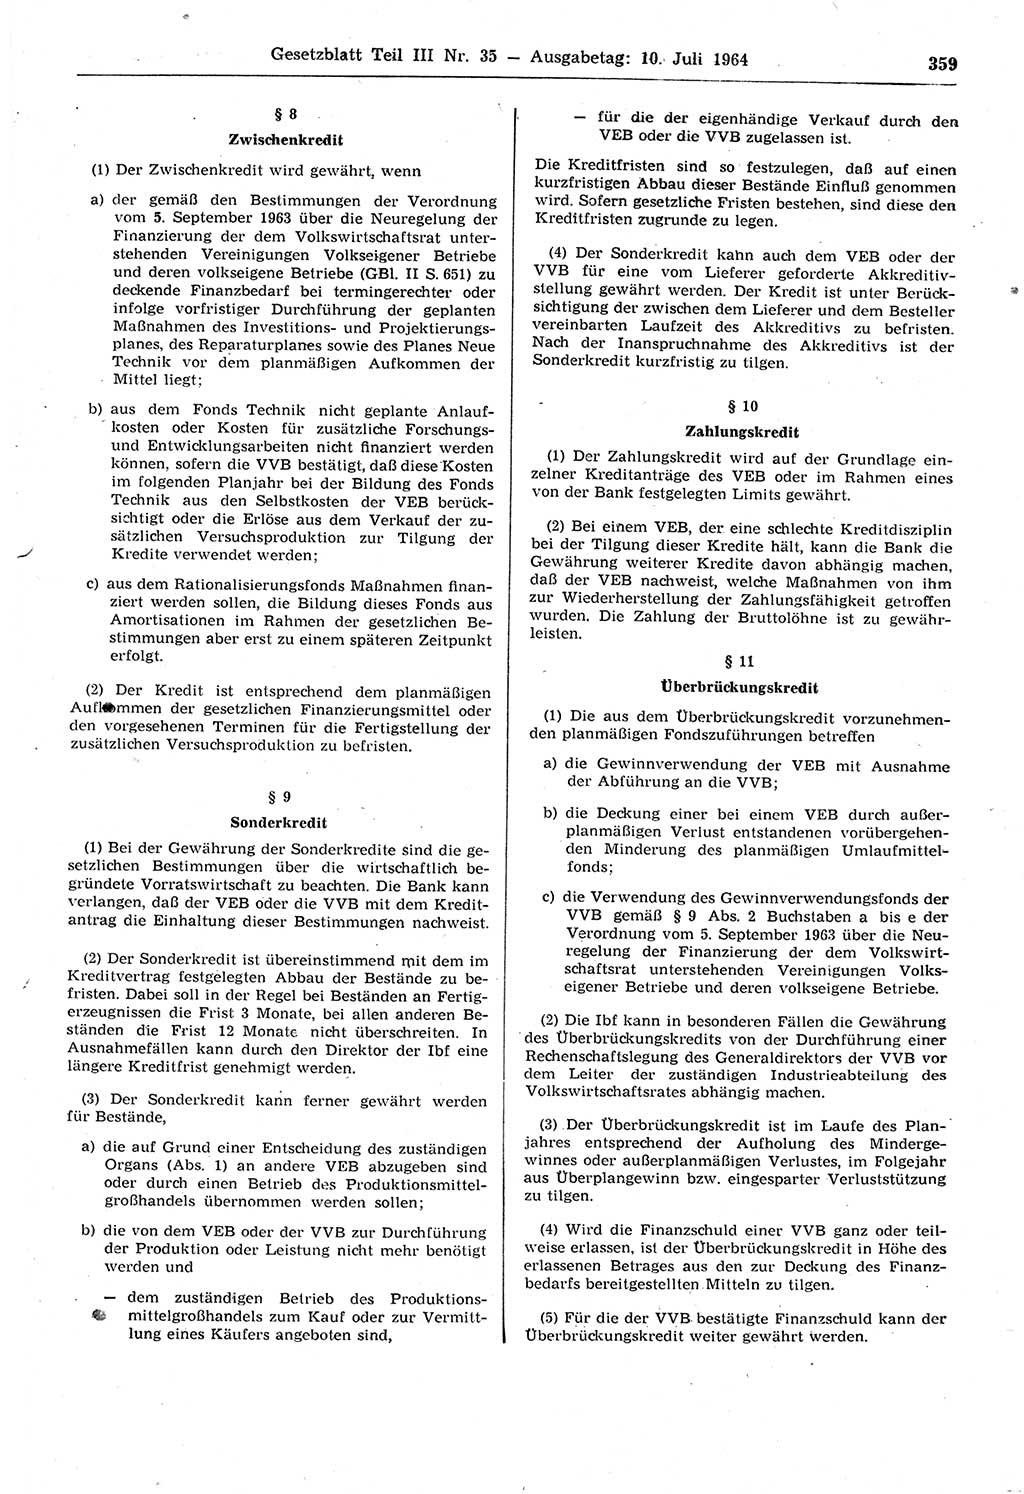 Gesetzblatt (GBl.) der Deutschen Demokratischen Republik (DDR) Teil ⅠⅠⅠ 1964, Seite 359 (GBl. DDR ⅠⅠⅠ 1964, S. 359)